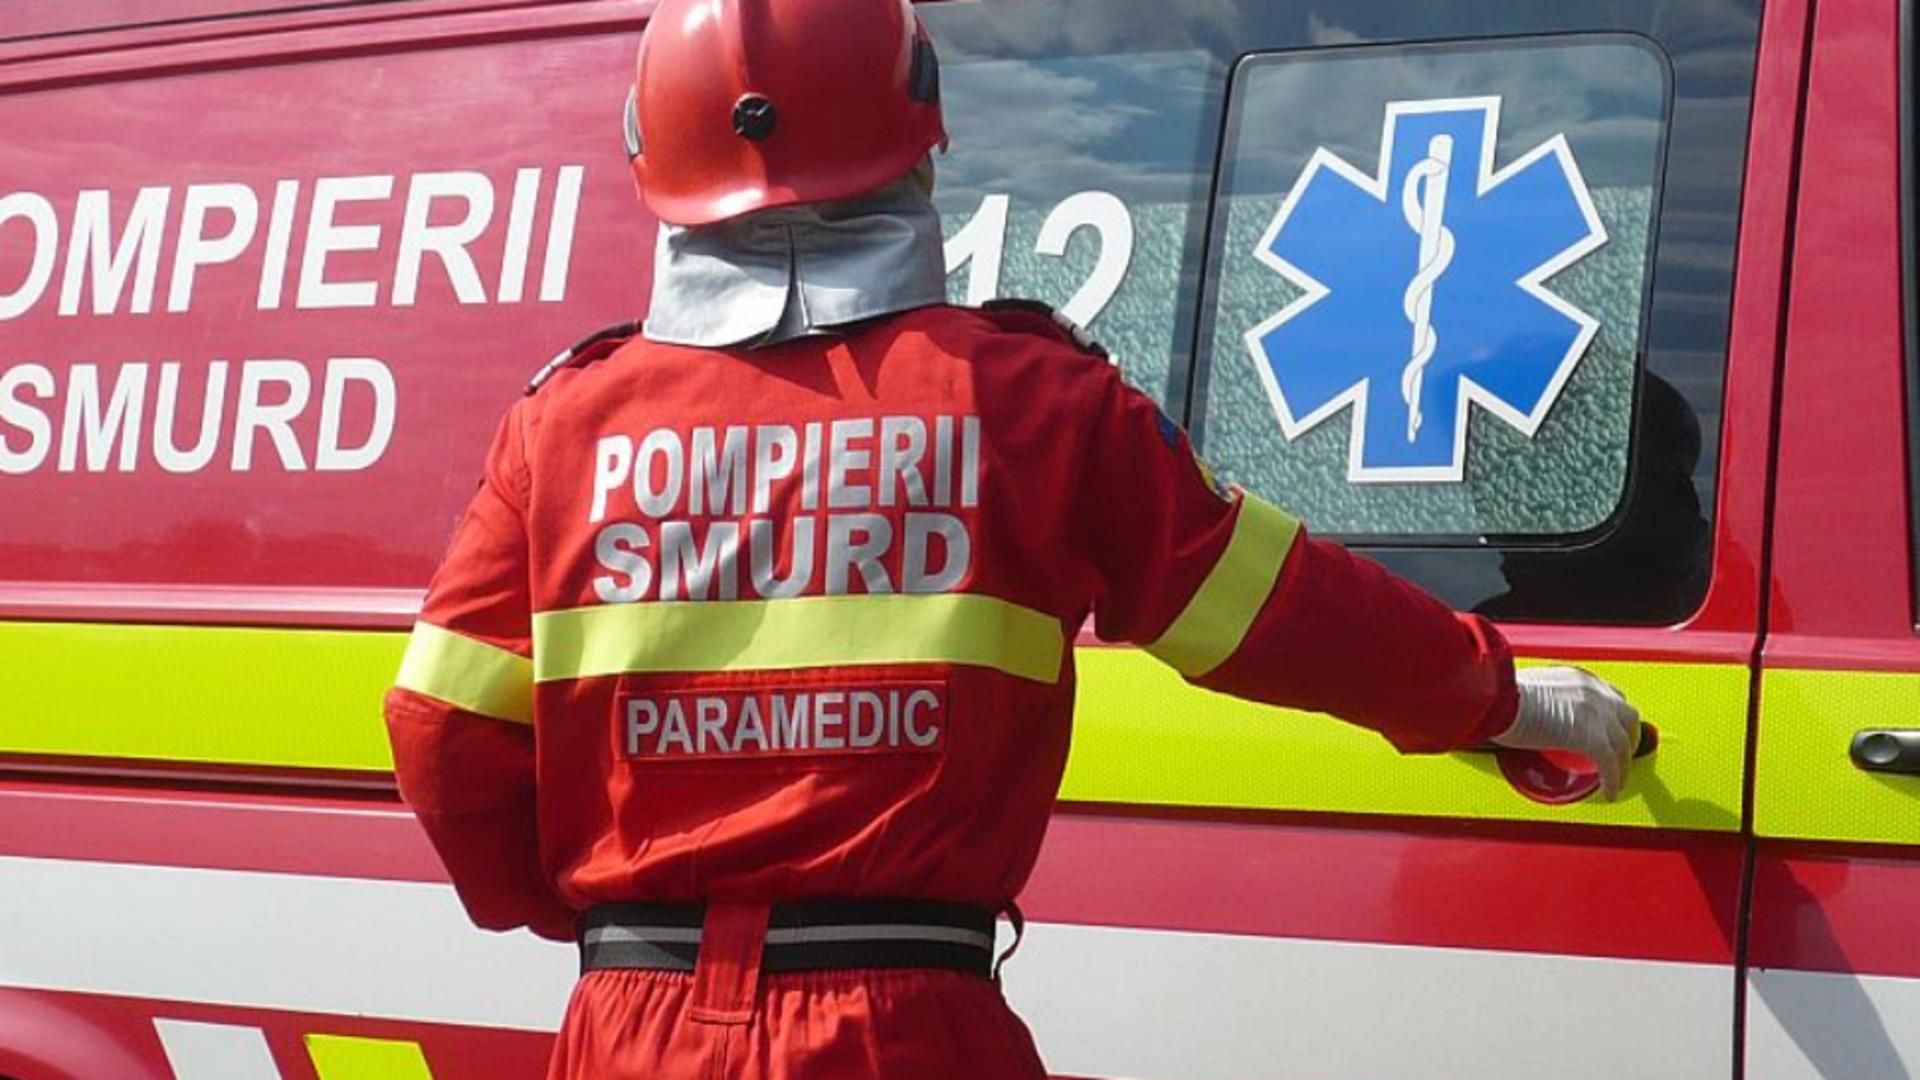 Impact violent în județul Argeș - O femeie grav rănită, dusă de urgență la spital după coliziune 